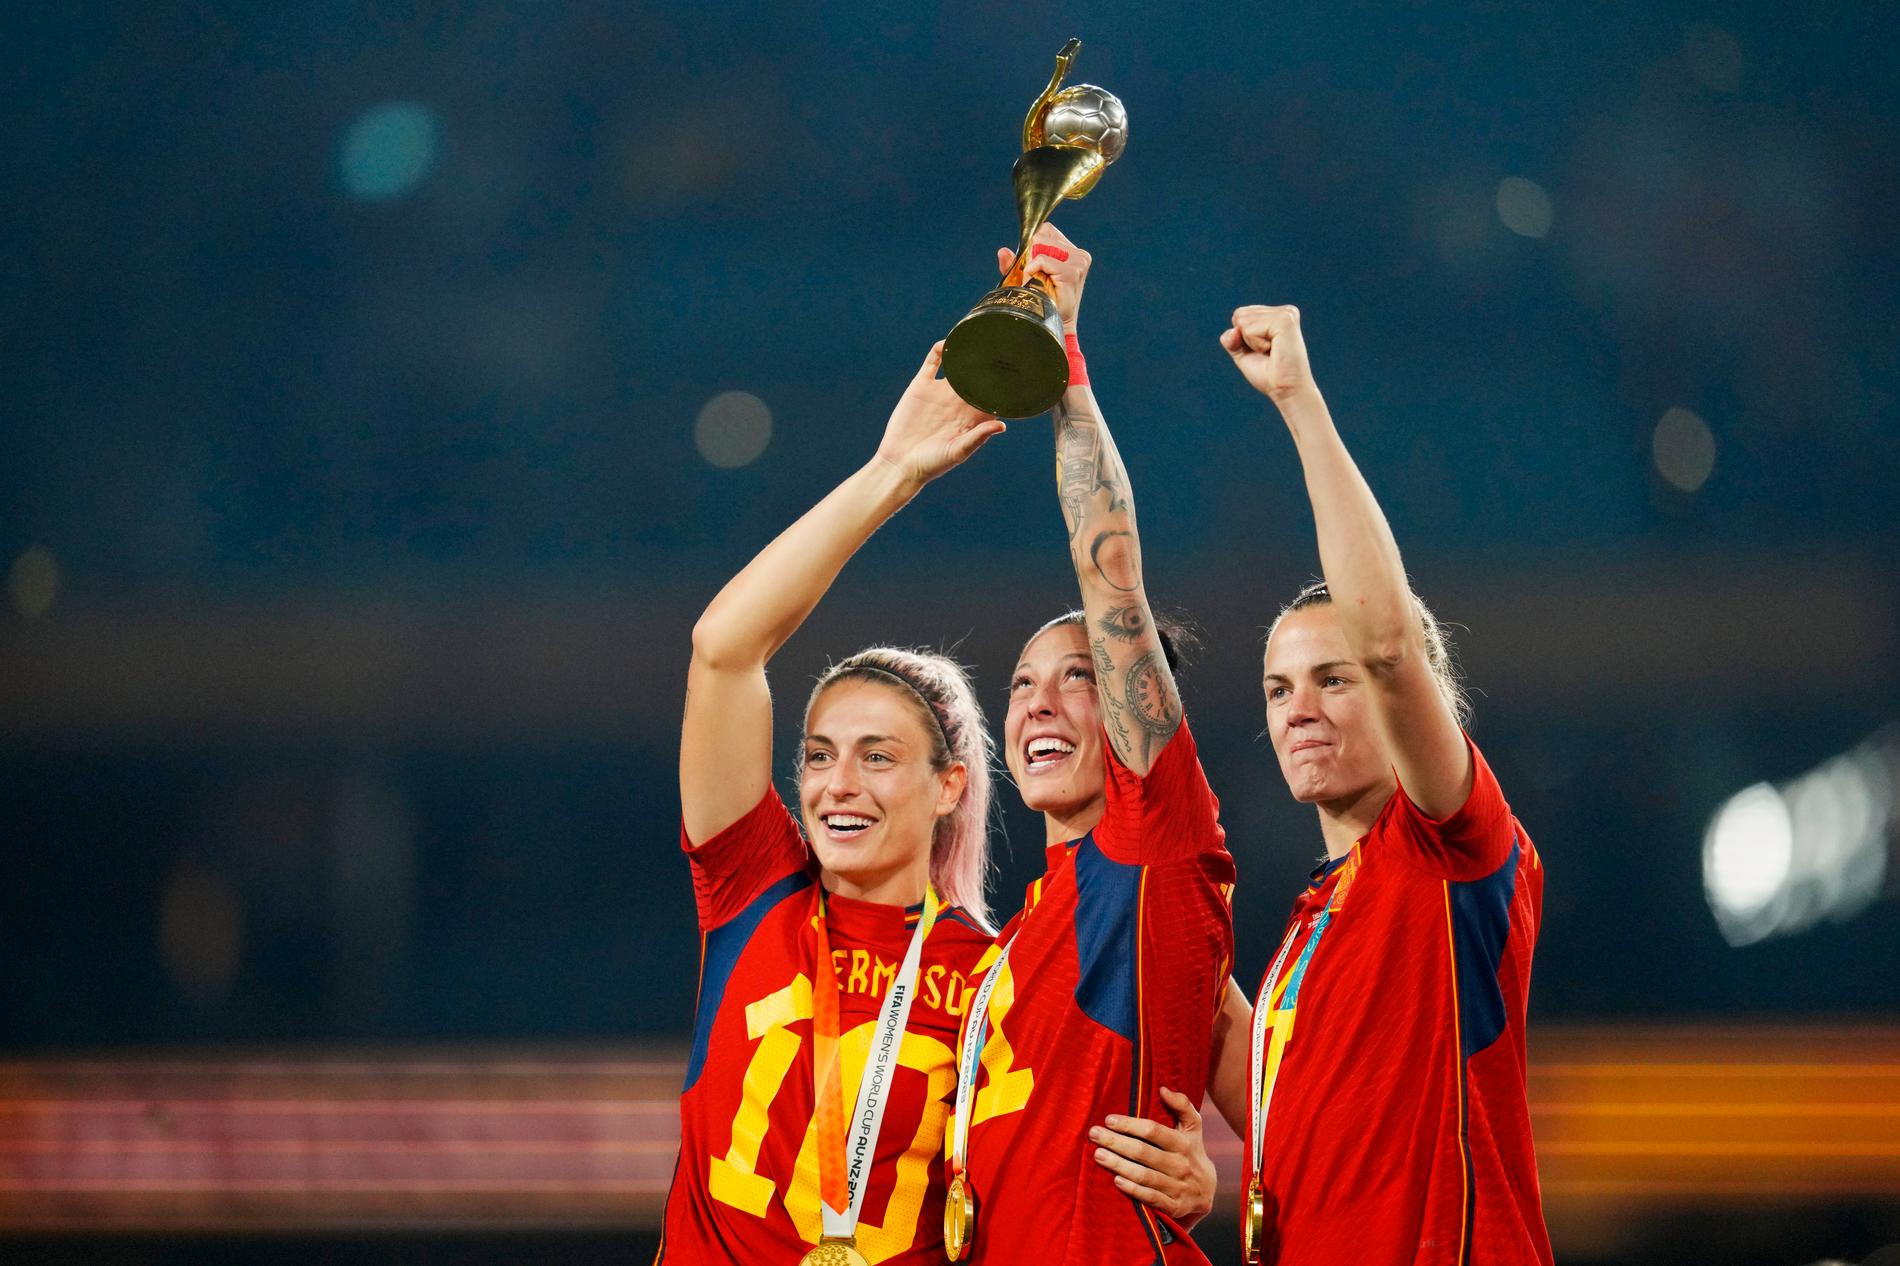 Spanias fotballforbund ber spillerne avslutte boikotten: – Garanterer trygghet